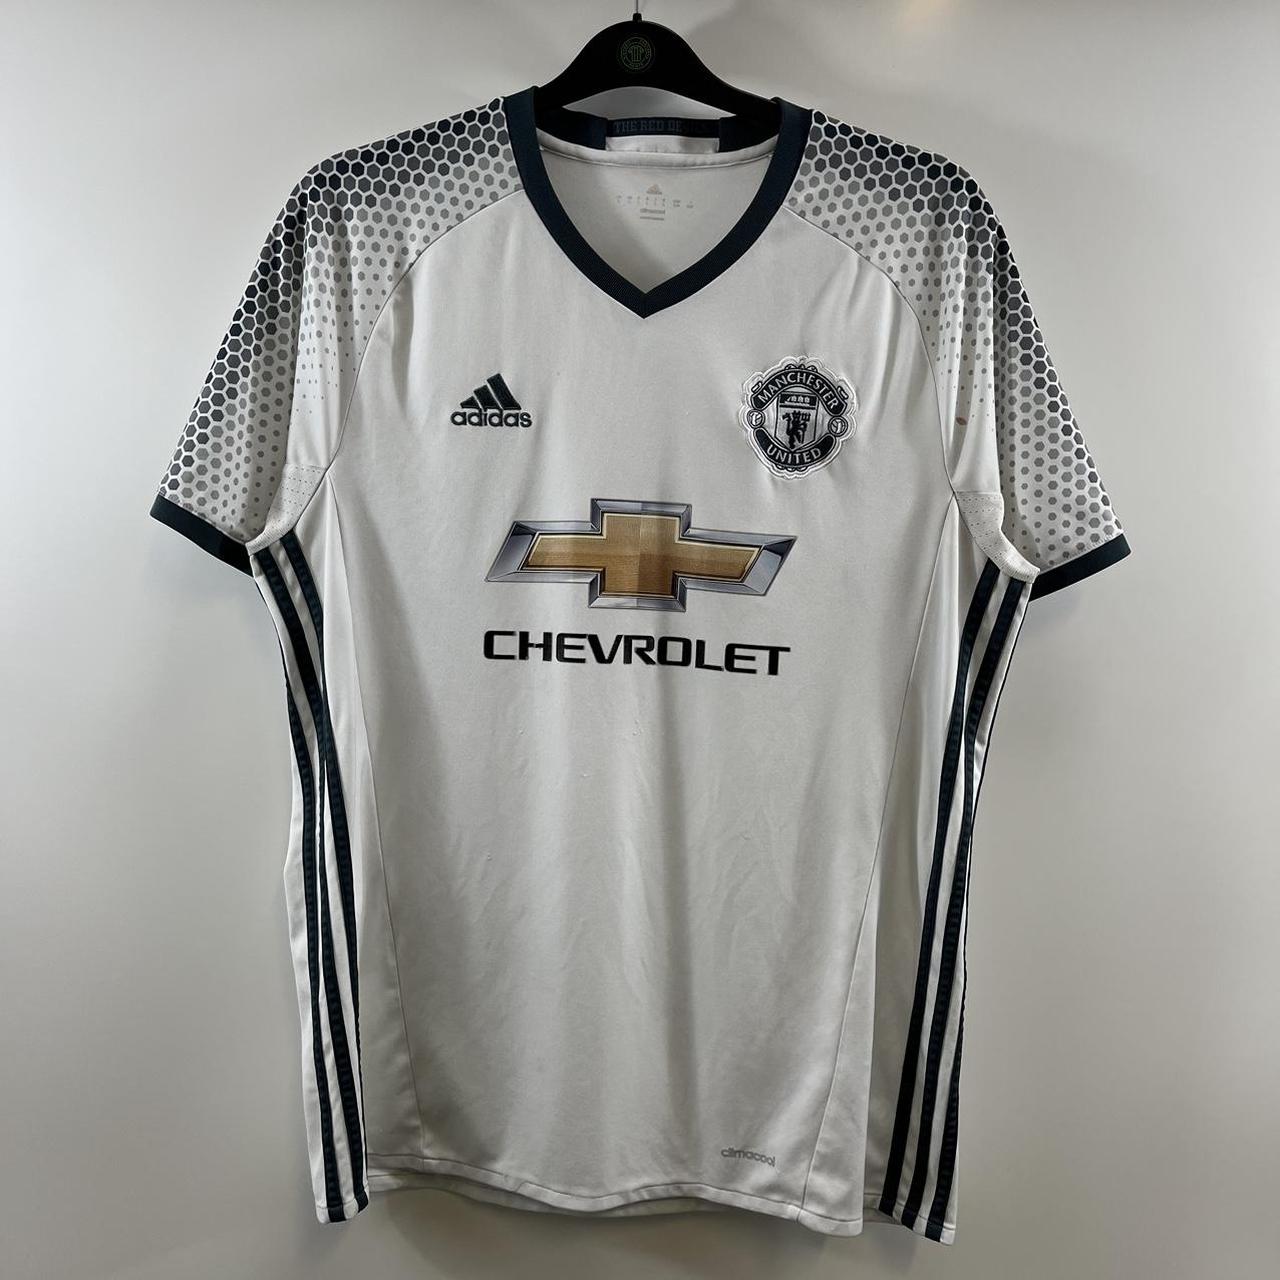 Manchester United Home Football Shirt 2016/17 - Depop